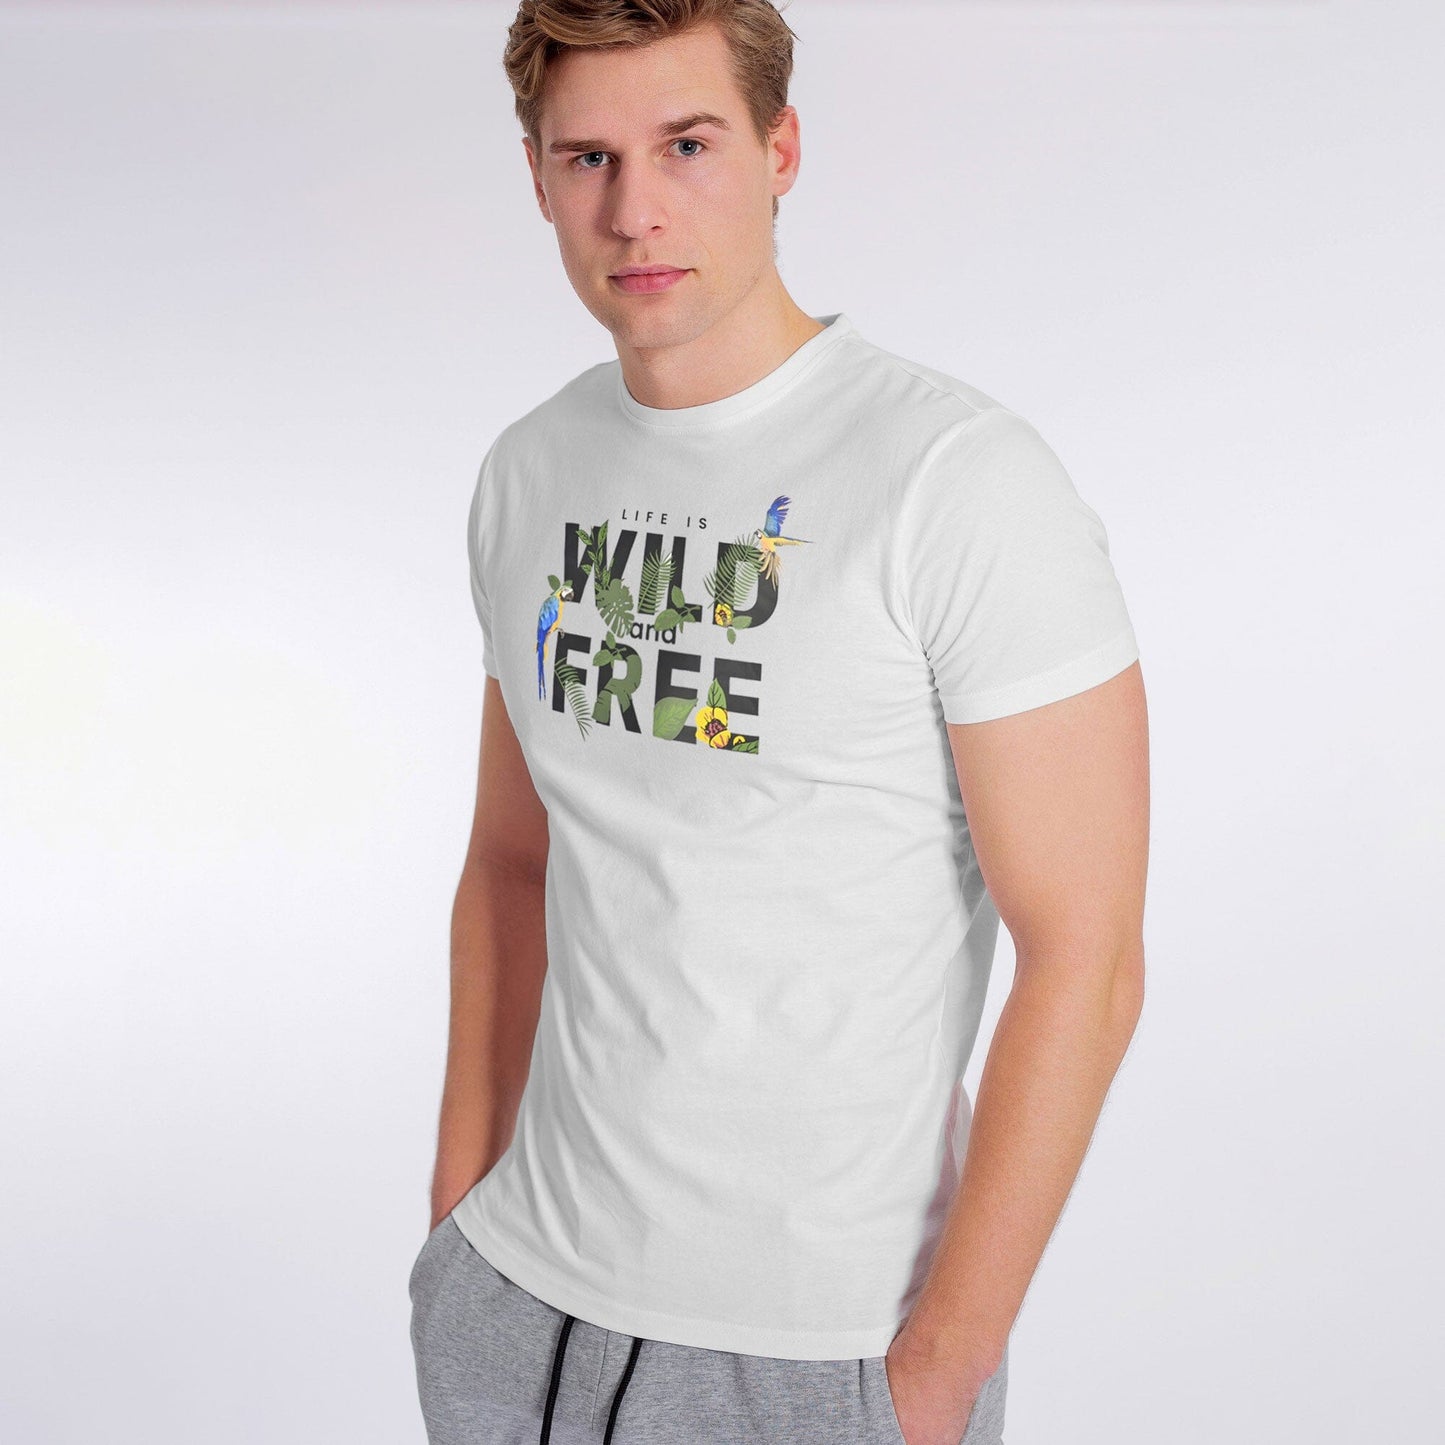 Polo Republica Men's Wild & Fire Printed Crew Neck Tee Shirt